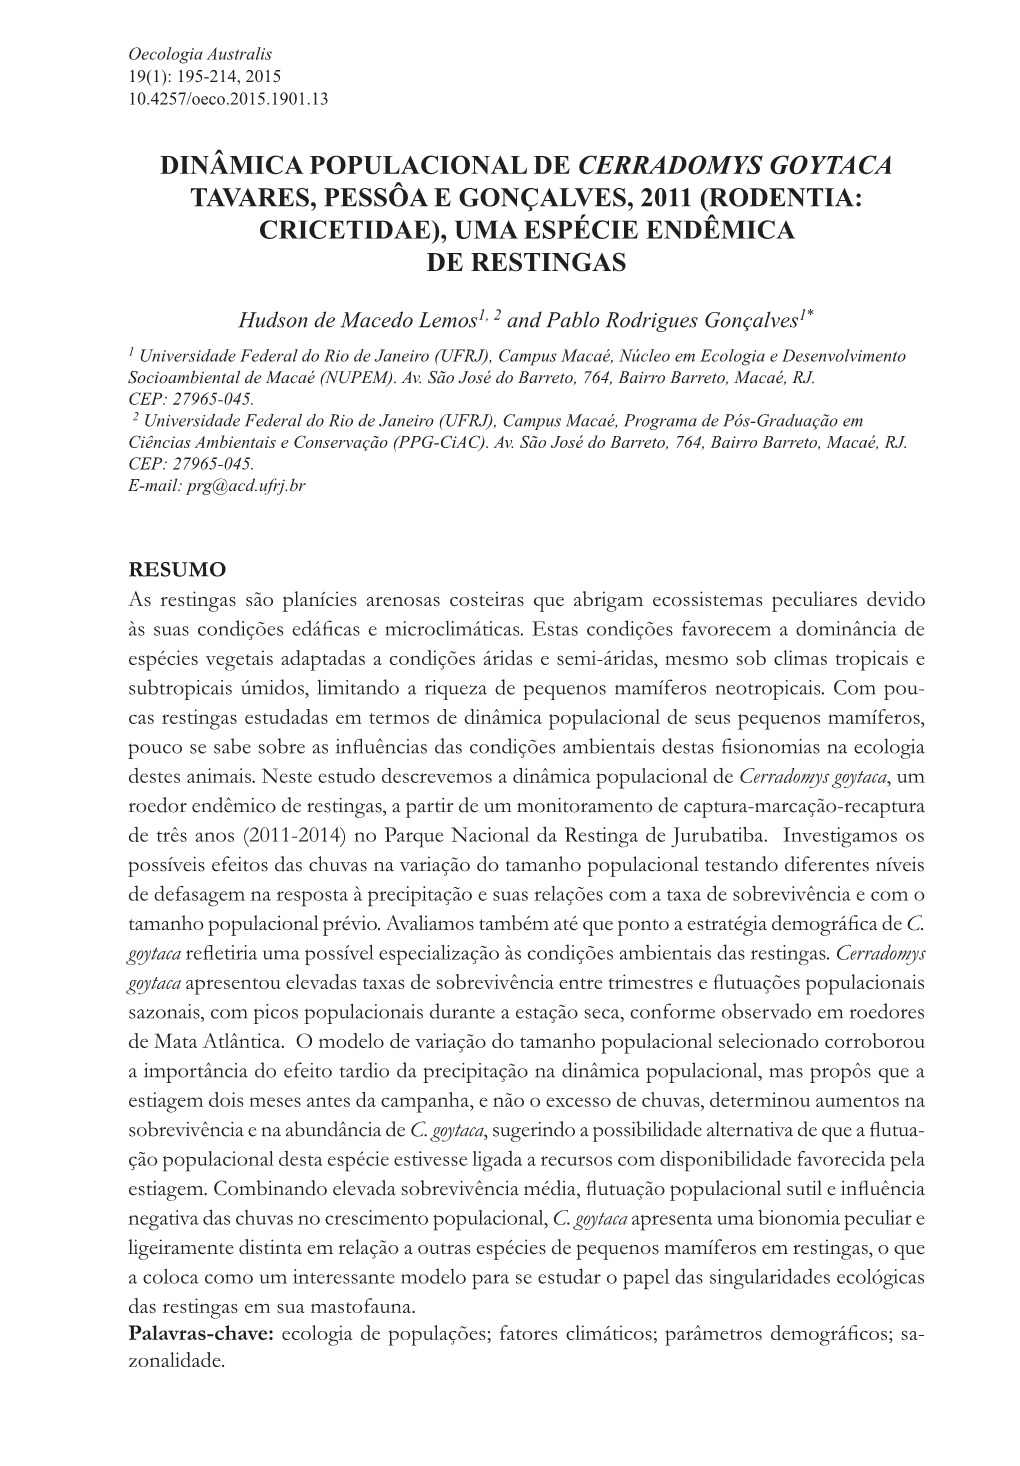 Dinâmica POPULACIONAL DE Cerradomys Goytaca Tavares, Pessôa E Gonçalves, 2011 (Rodentia: Cricetidae), UMA ESPÉCIE ENDÊMICA DE RESTINGAS